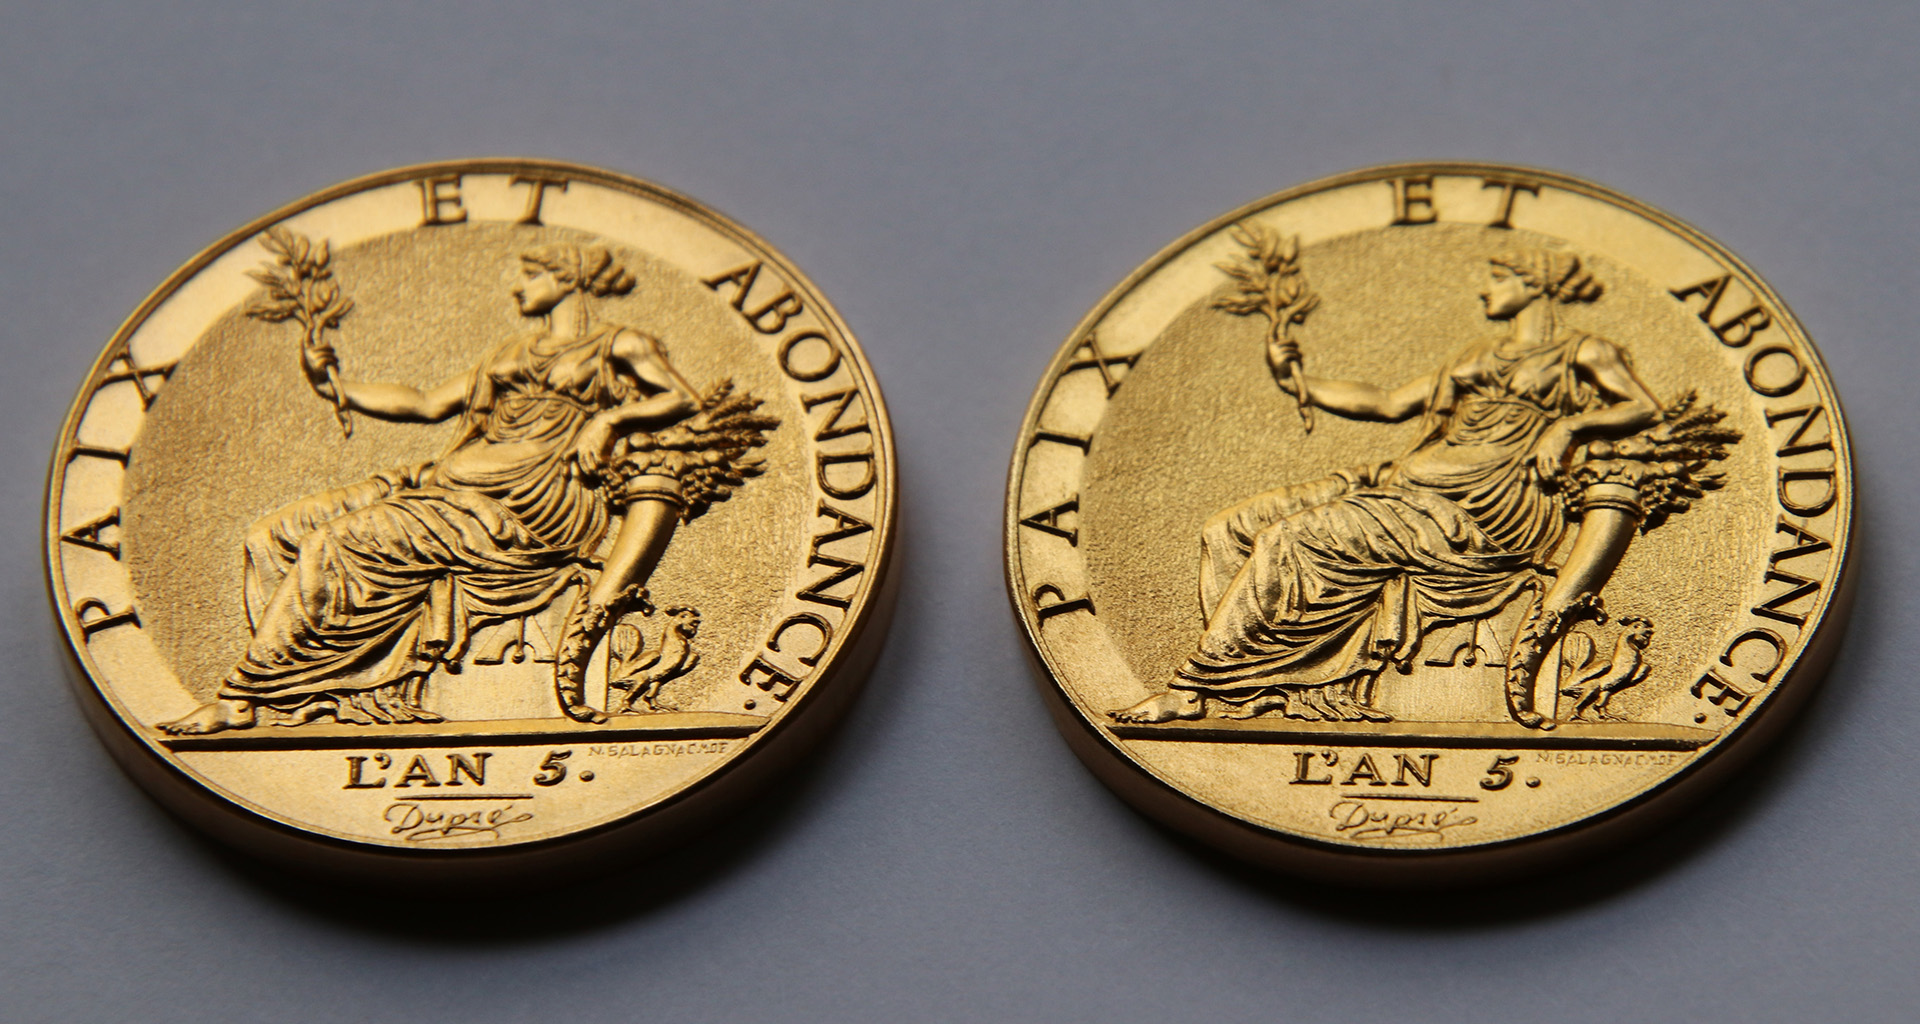 Création d’une médaille d’après la 10 grammes or de Dupré qui n’avait jamais vu le jour